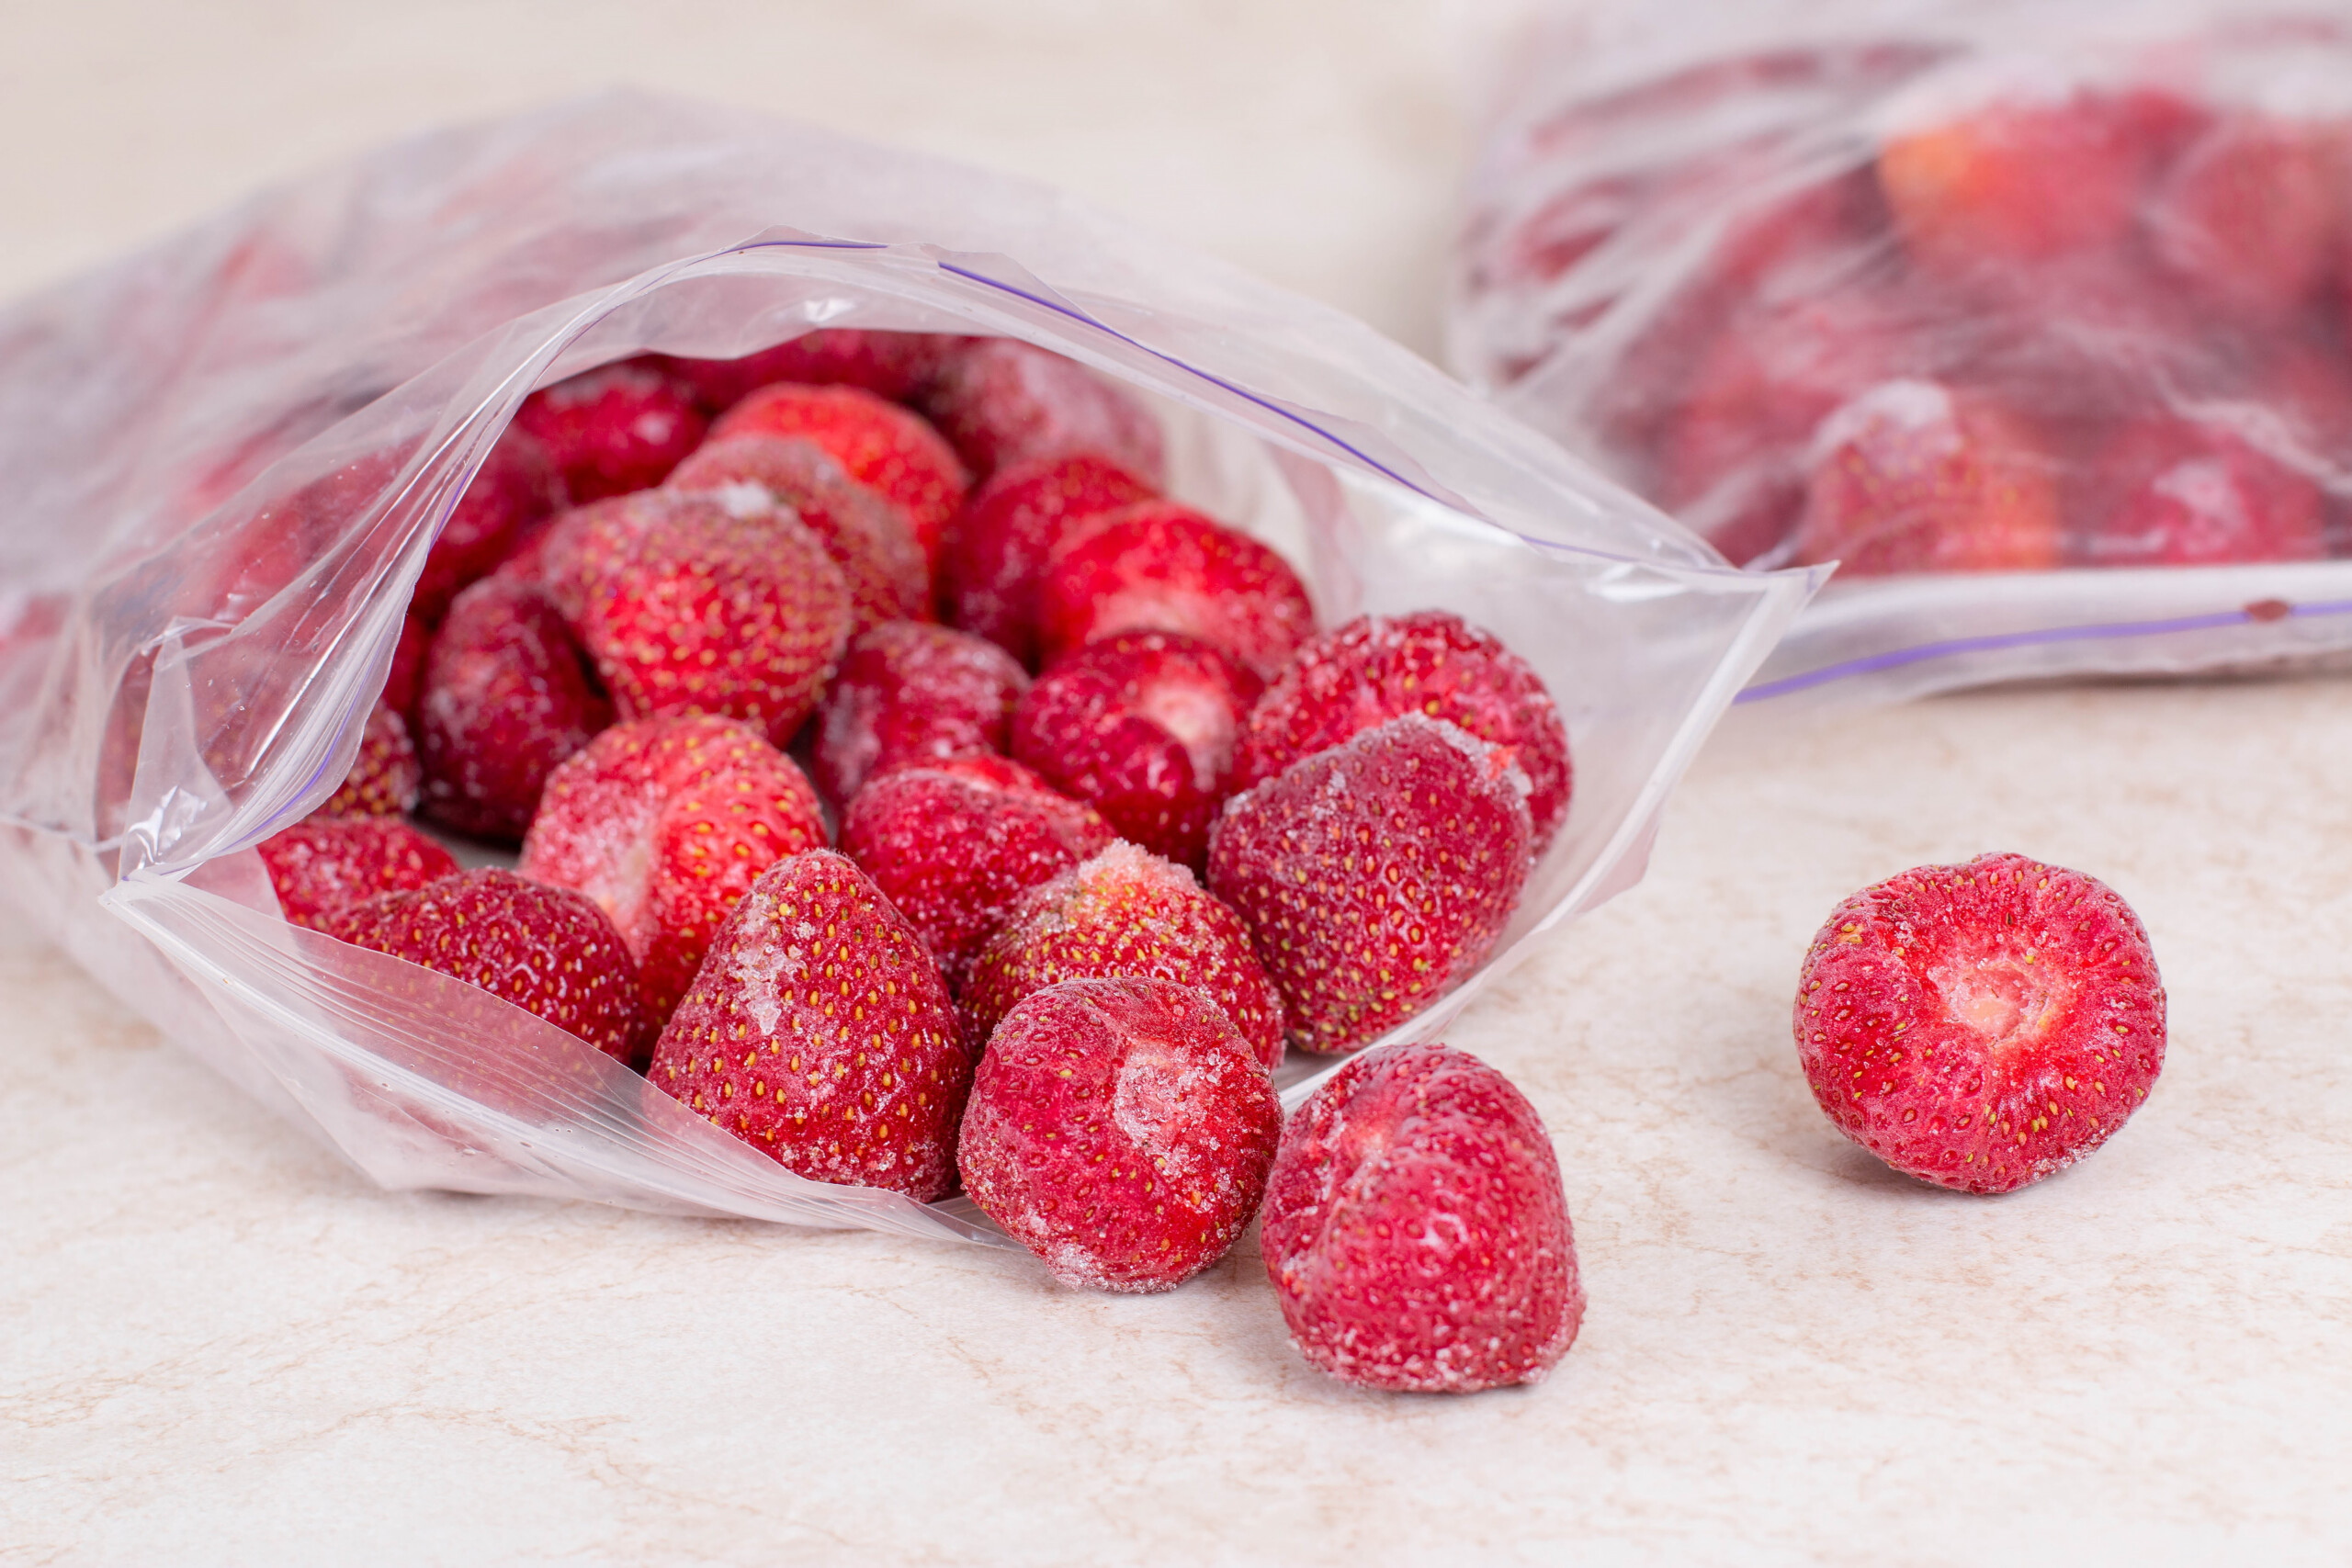 frozen strawberries in plastic bag